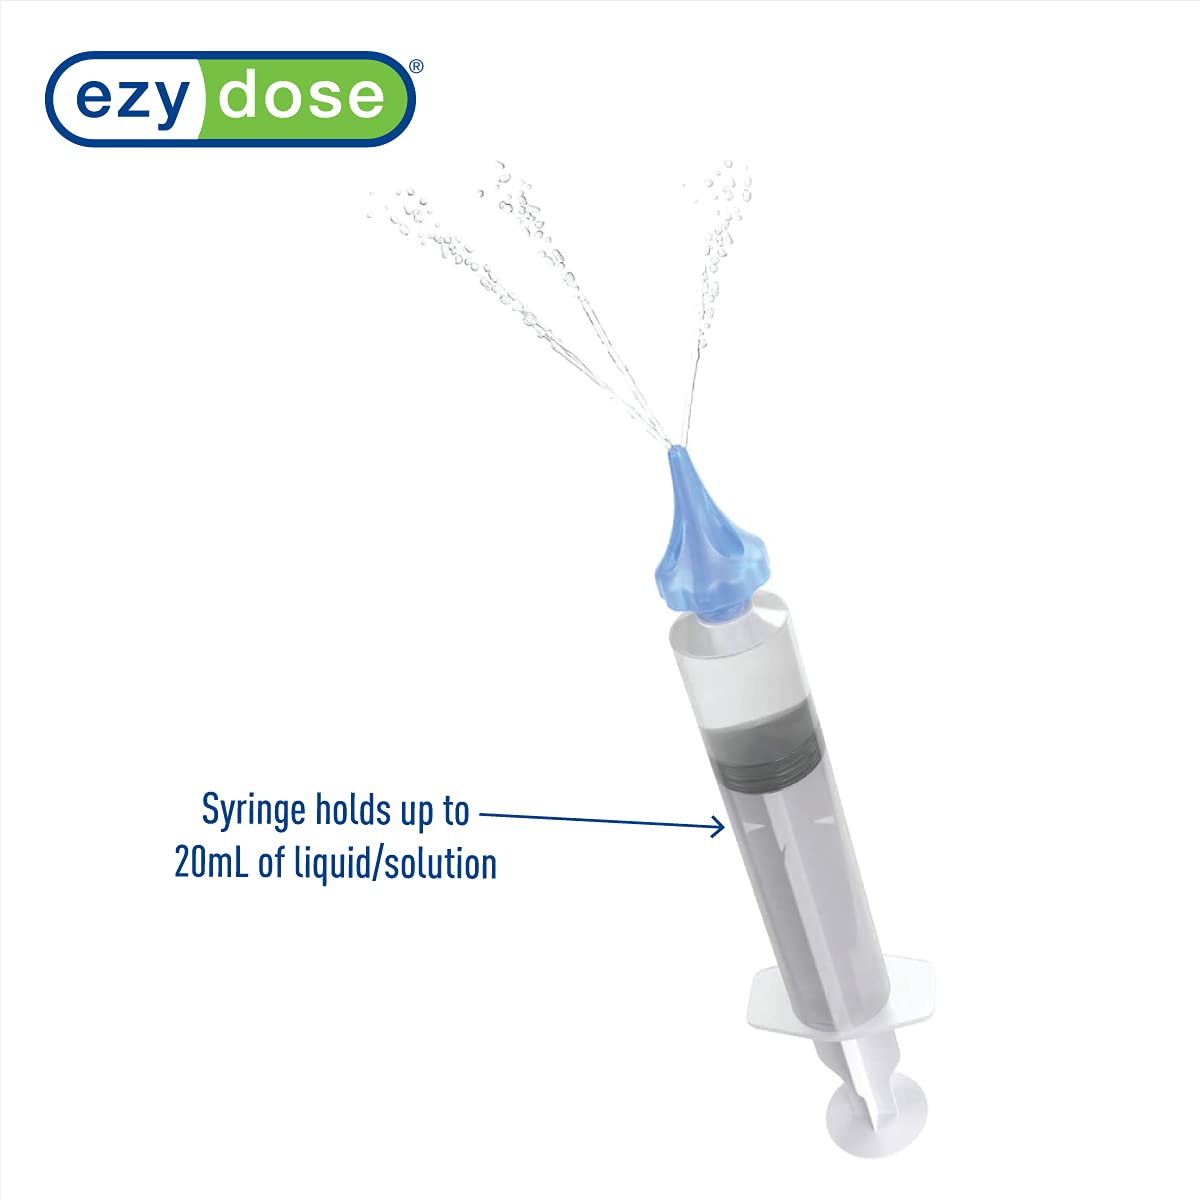 Ear Wax Removal Syringe Tri-Stream Tip